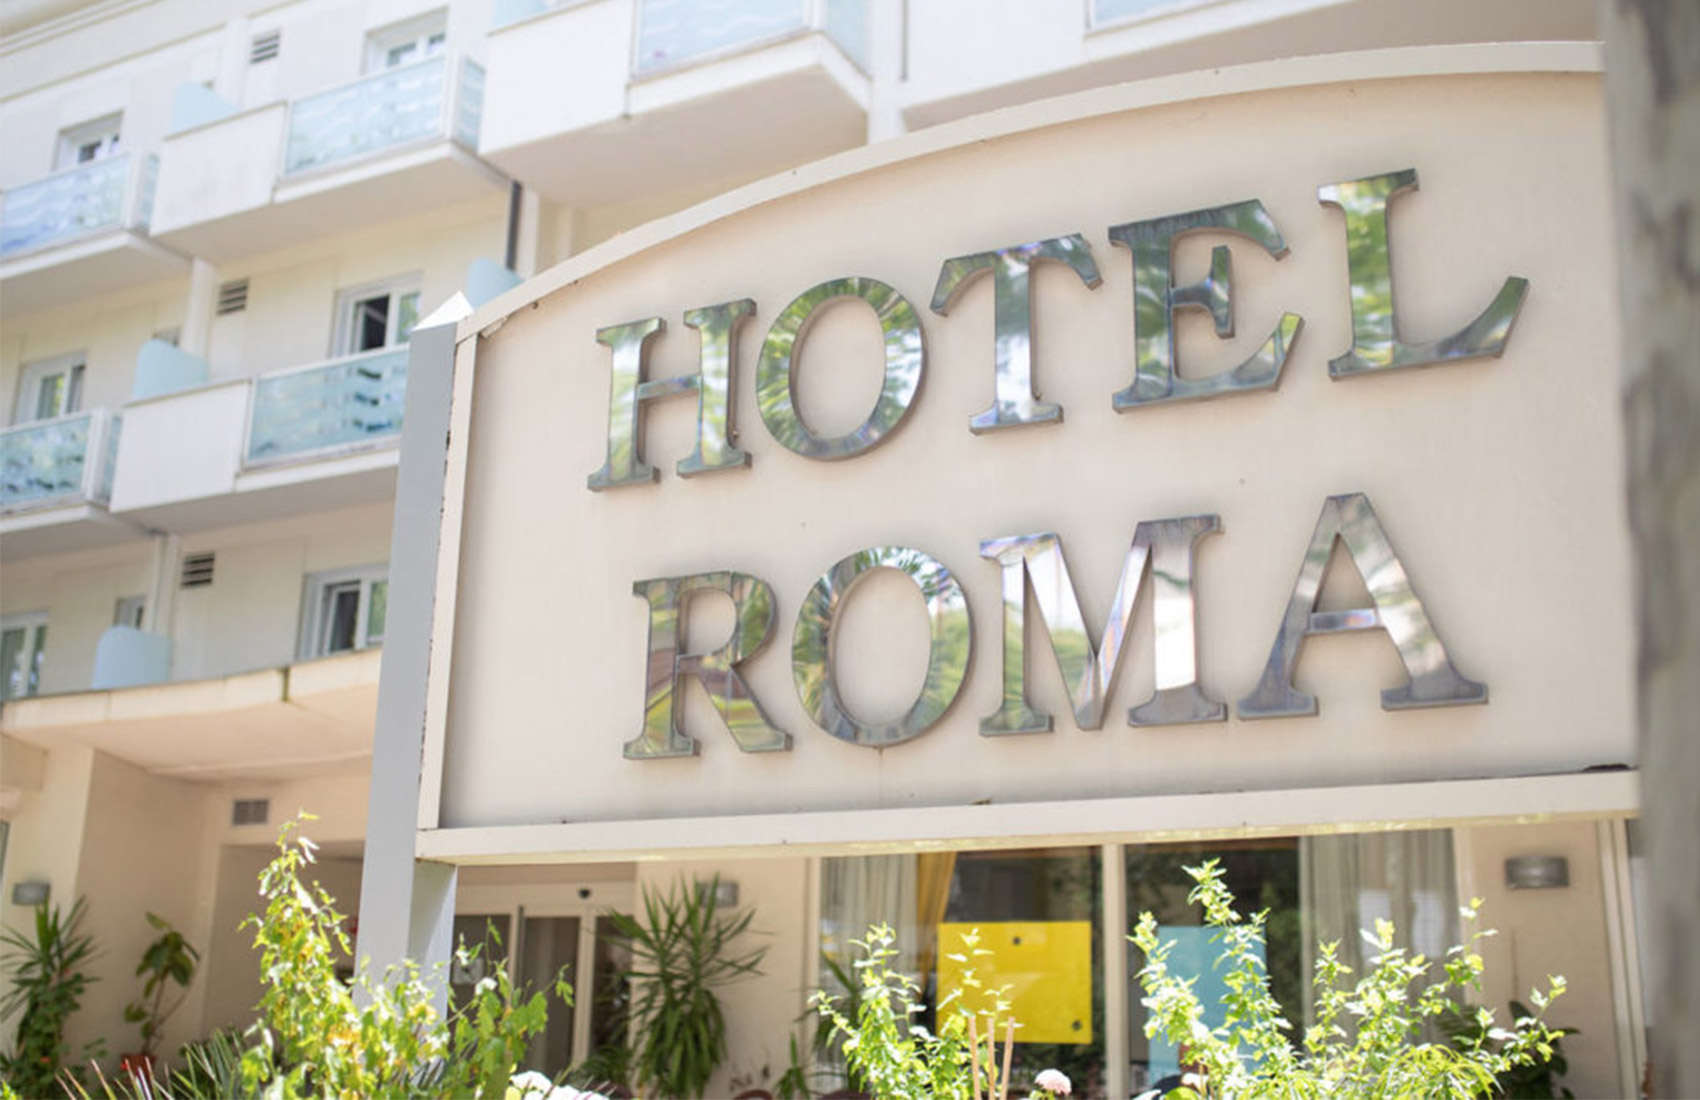 Hotel Roma - Cervia